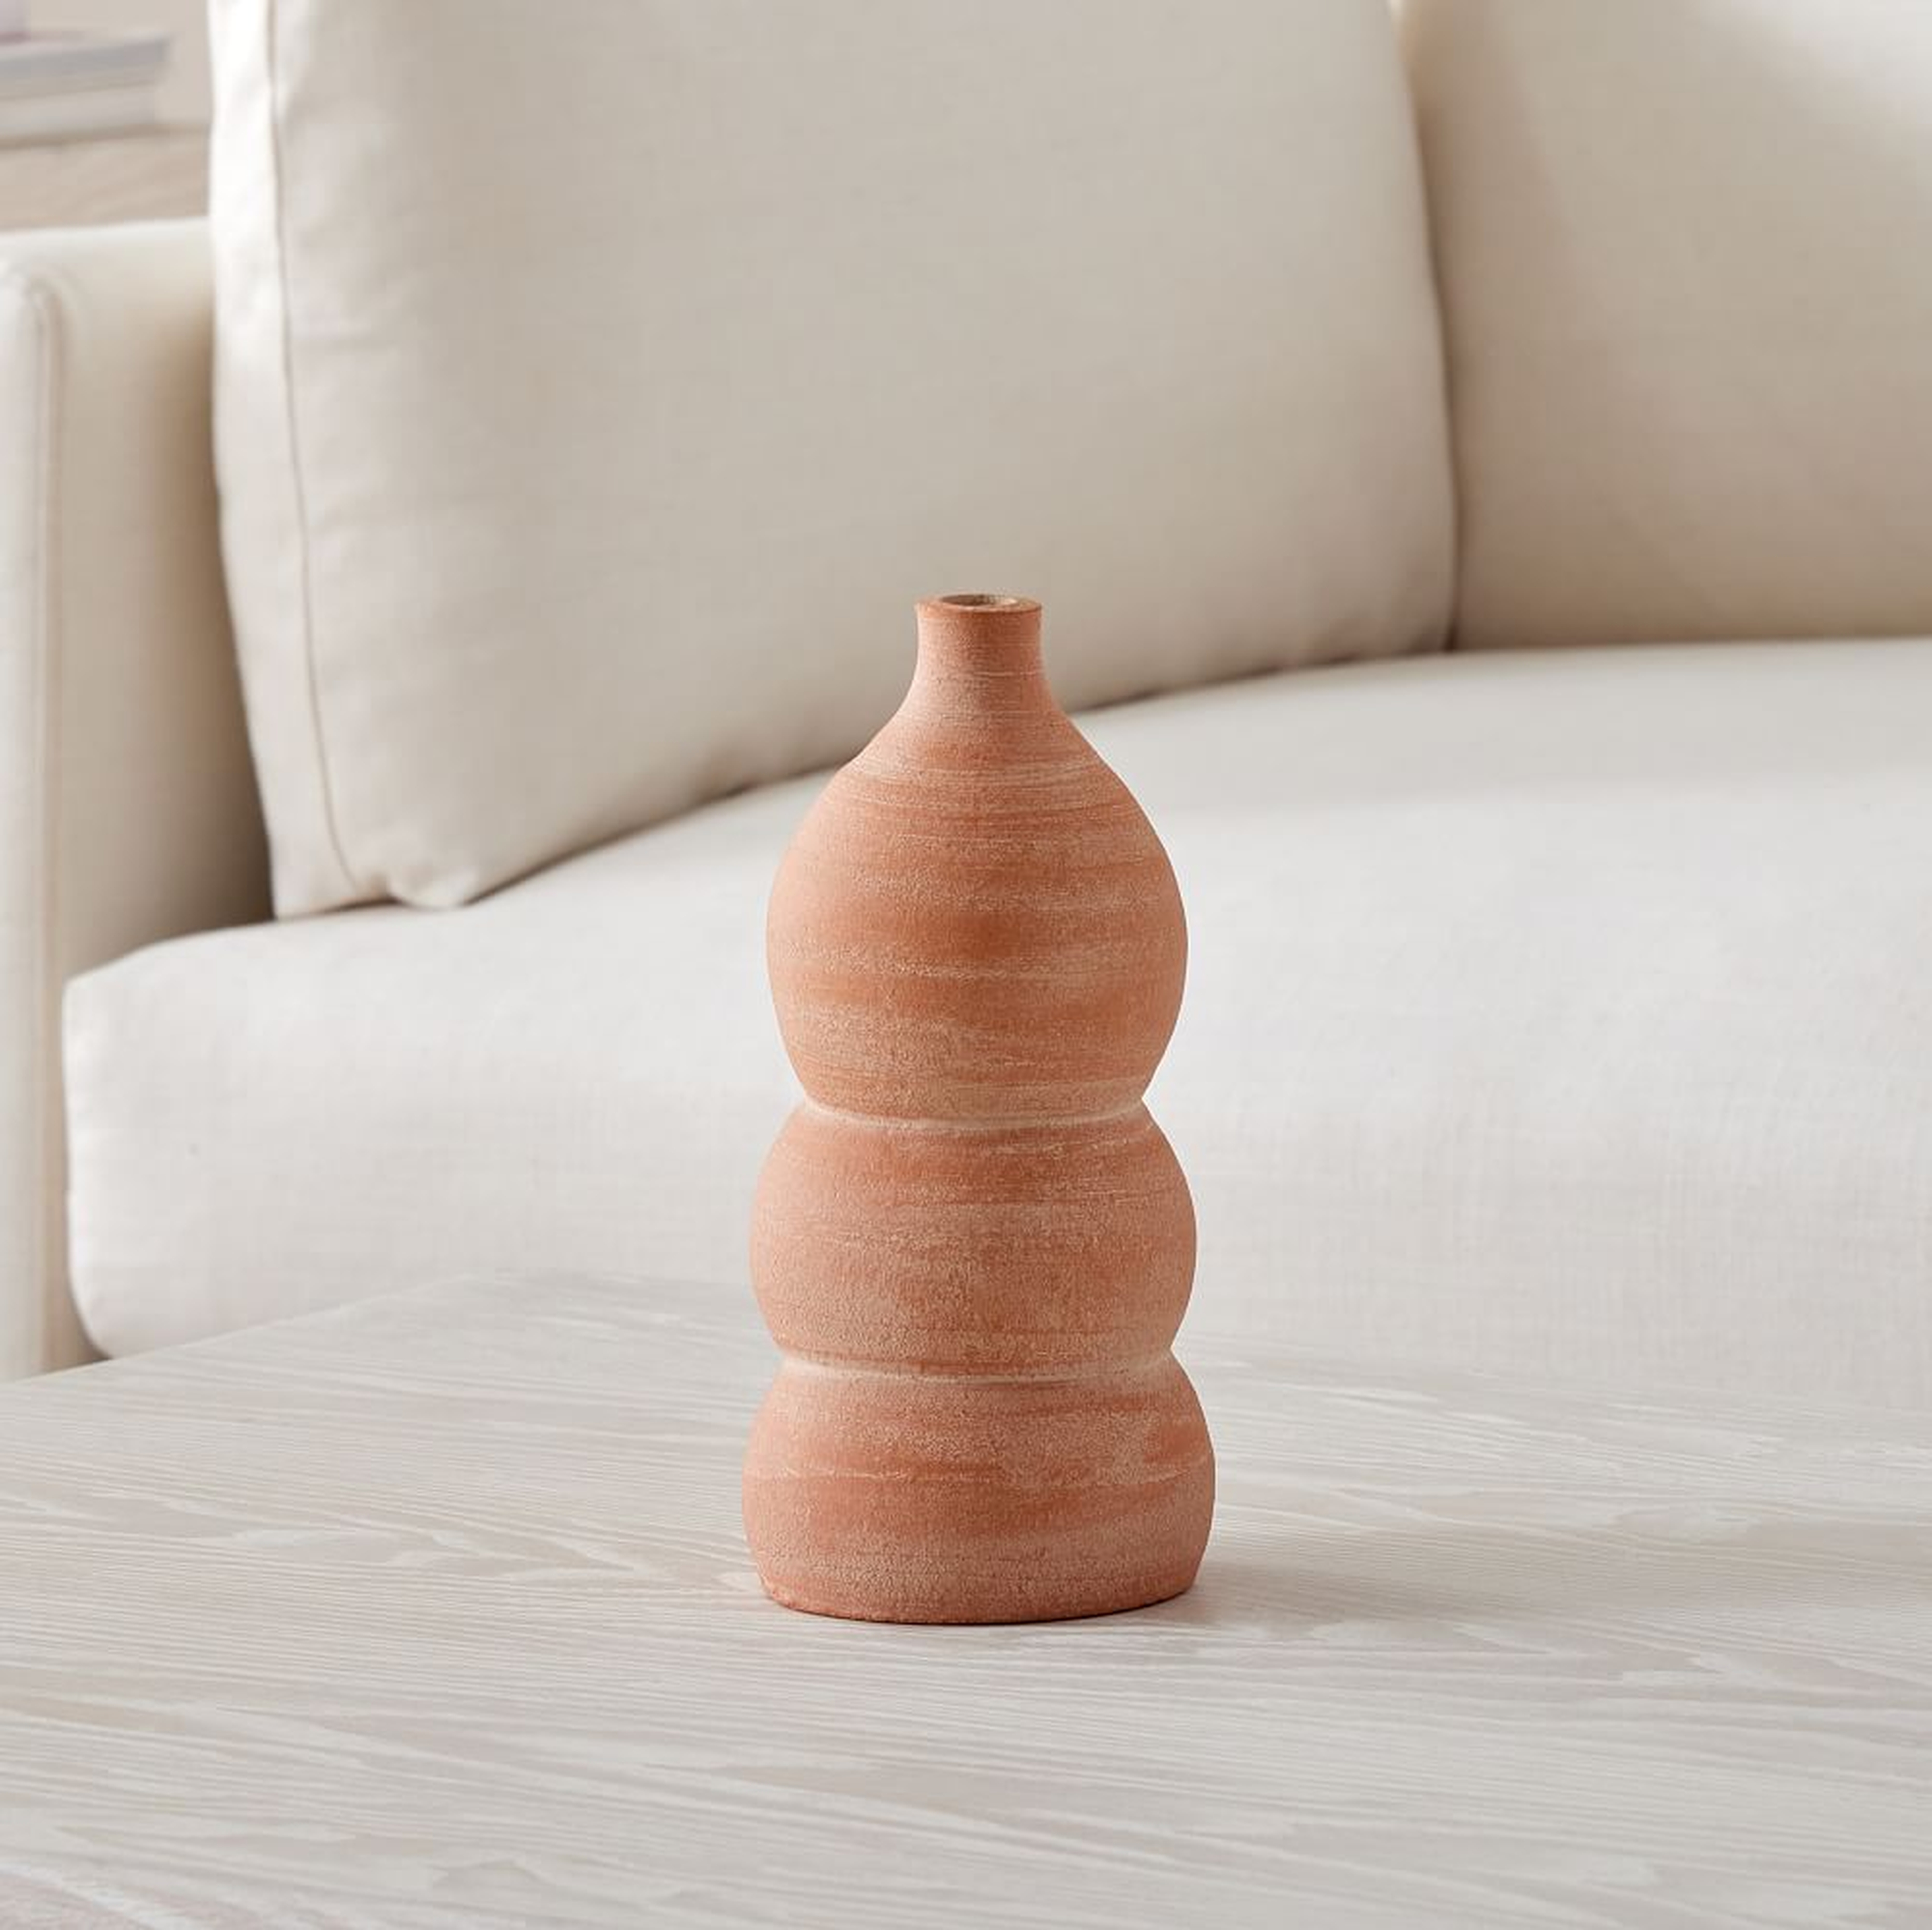 Atuto Terracotta Vases, Geo Vase, Terracotta, Ceramic, 9.5 Inches - West Elm